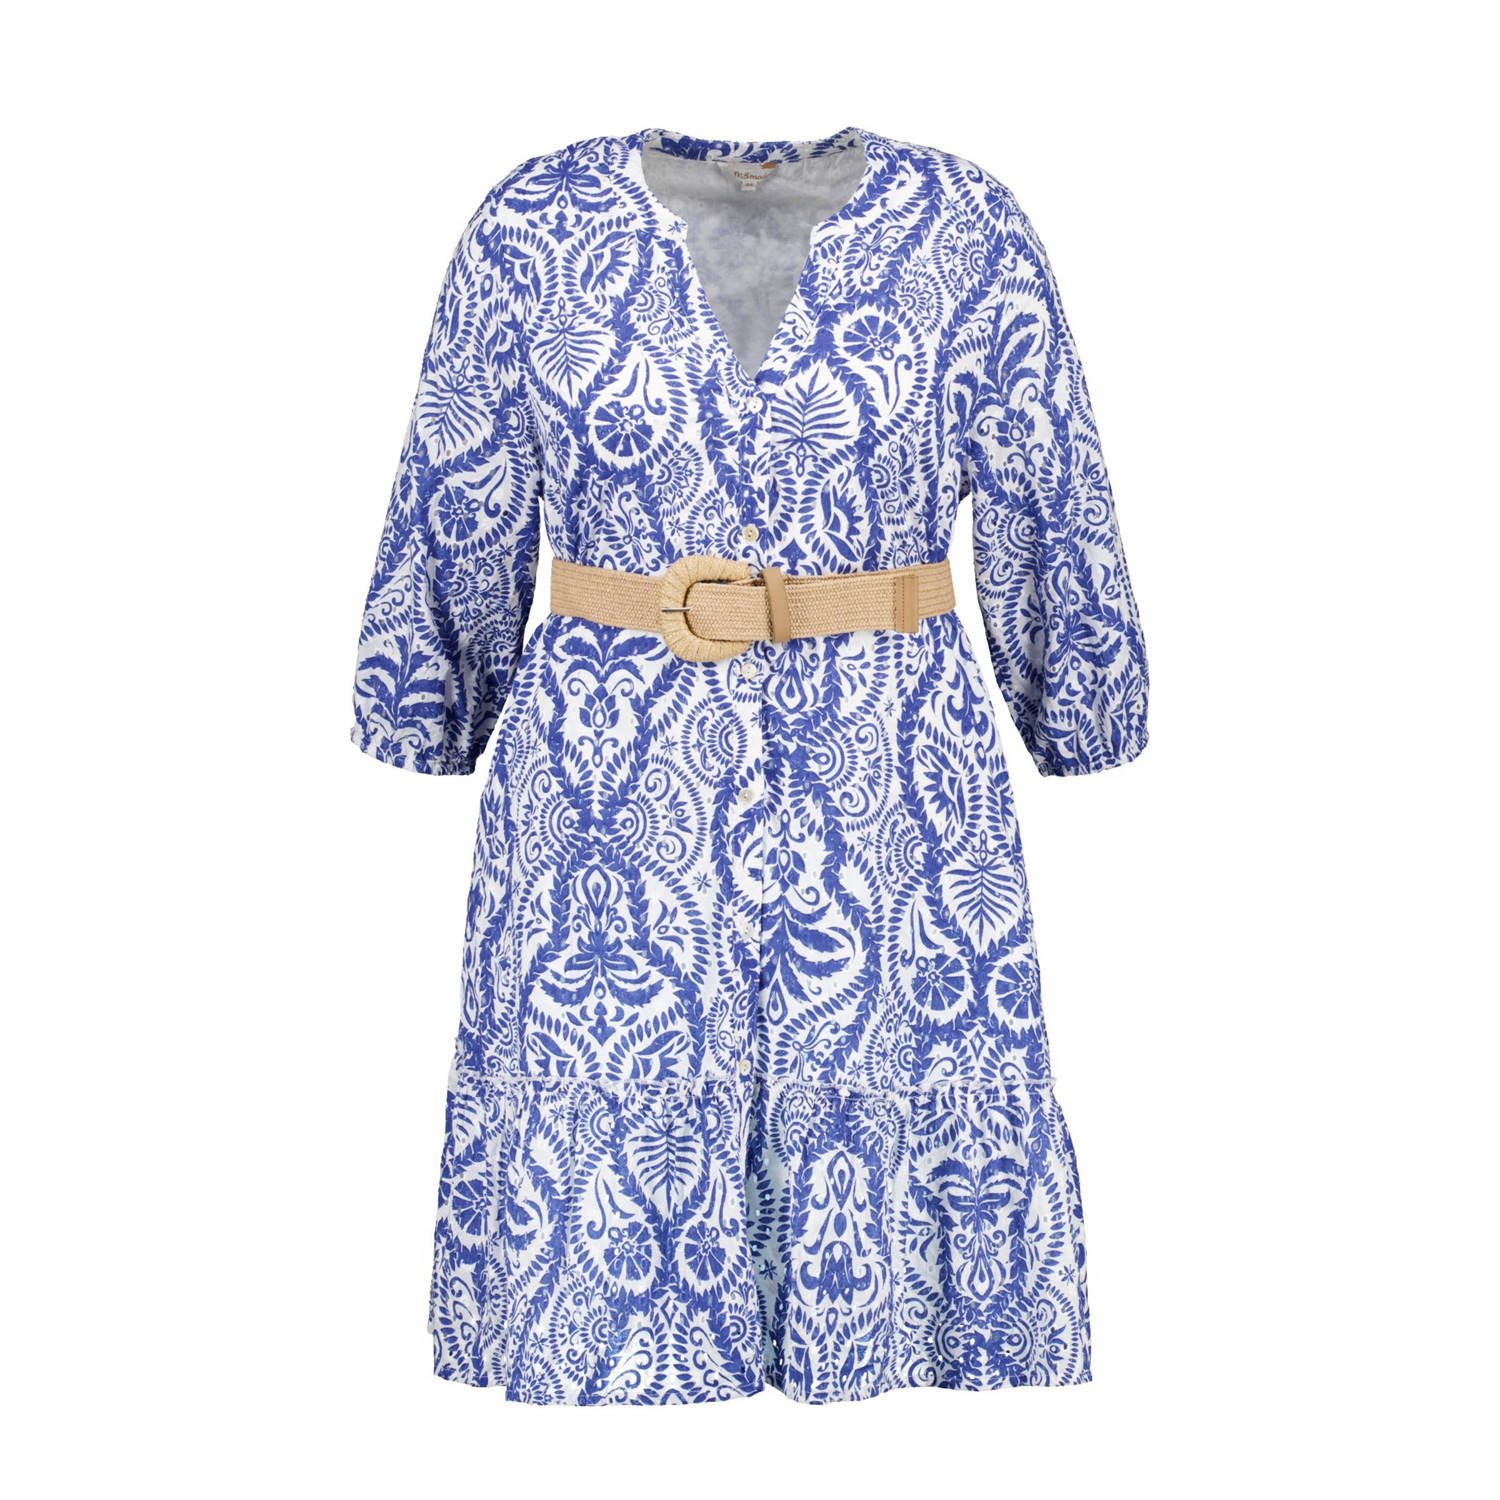 MS Mode jurk met all over print en ceintuur blauw wit